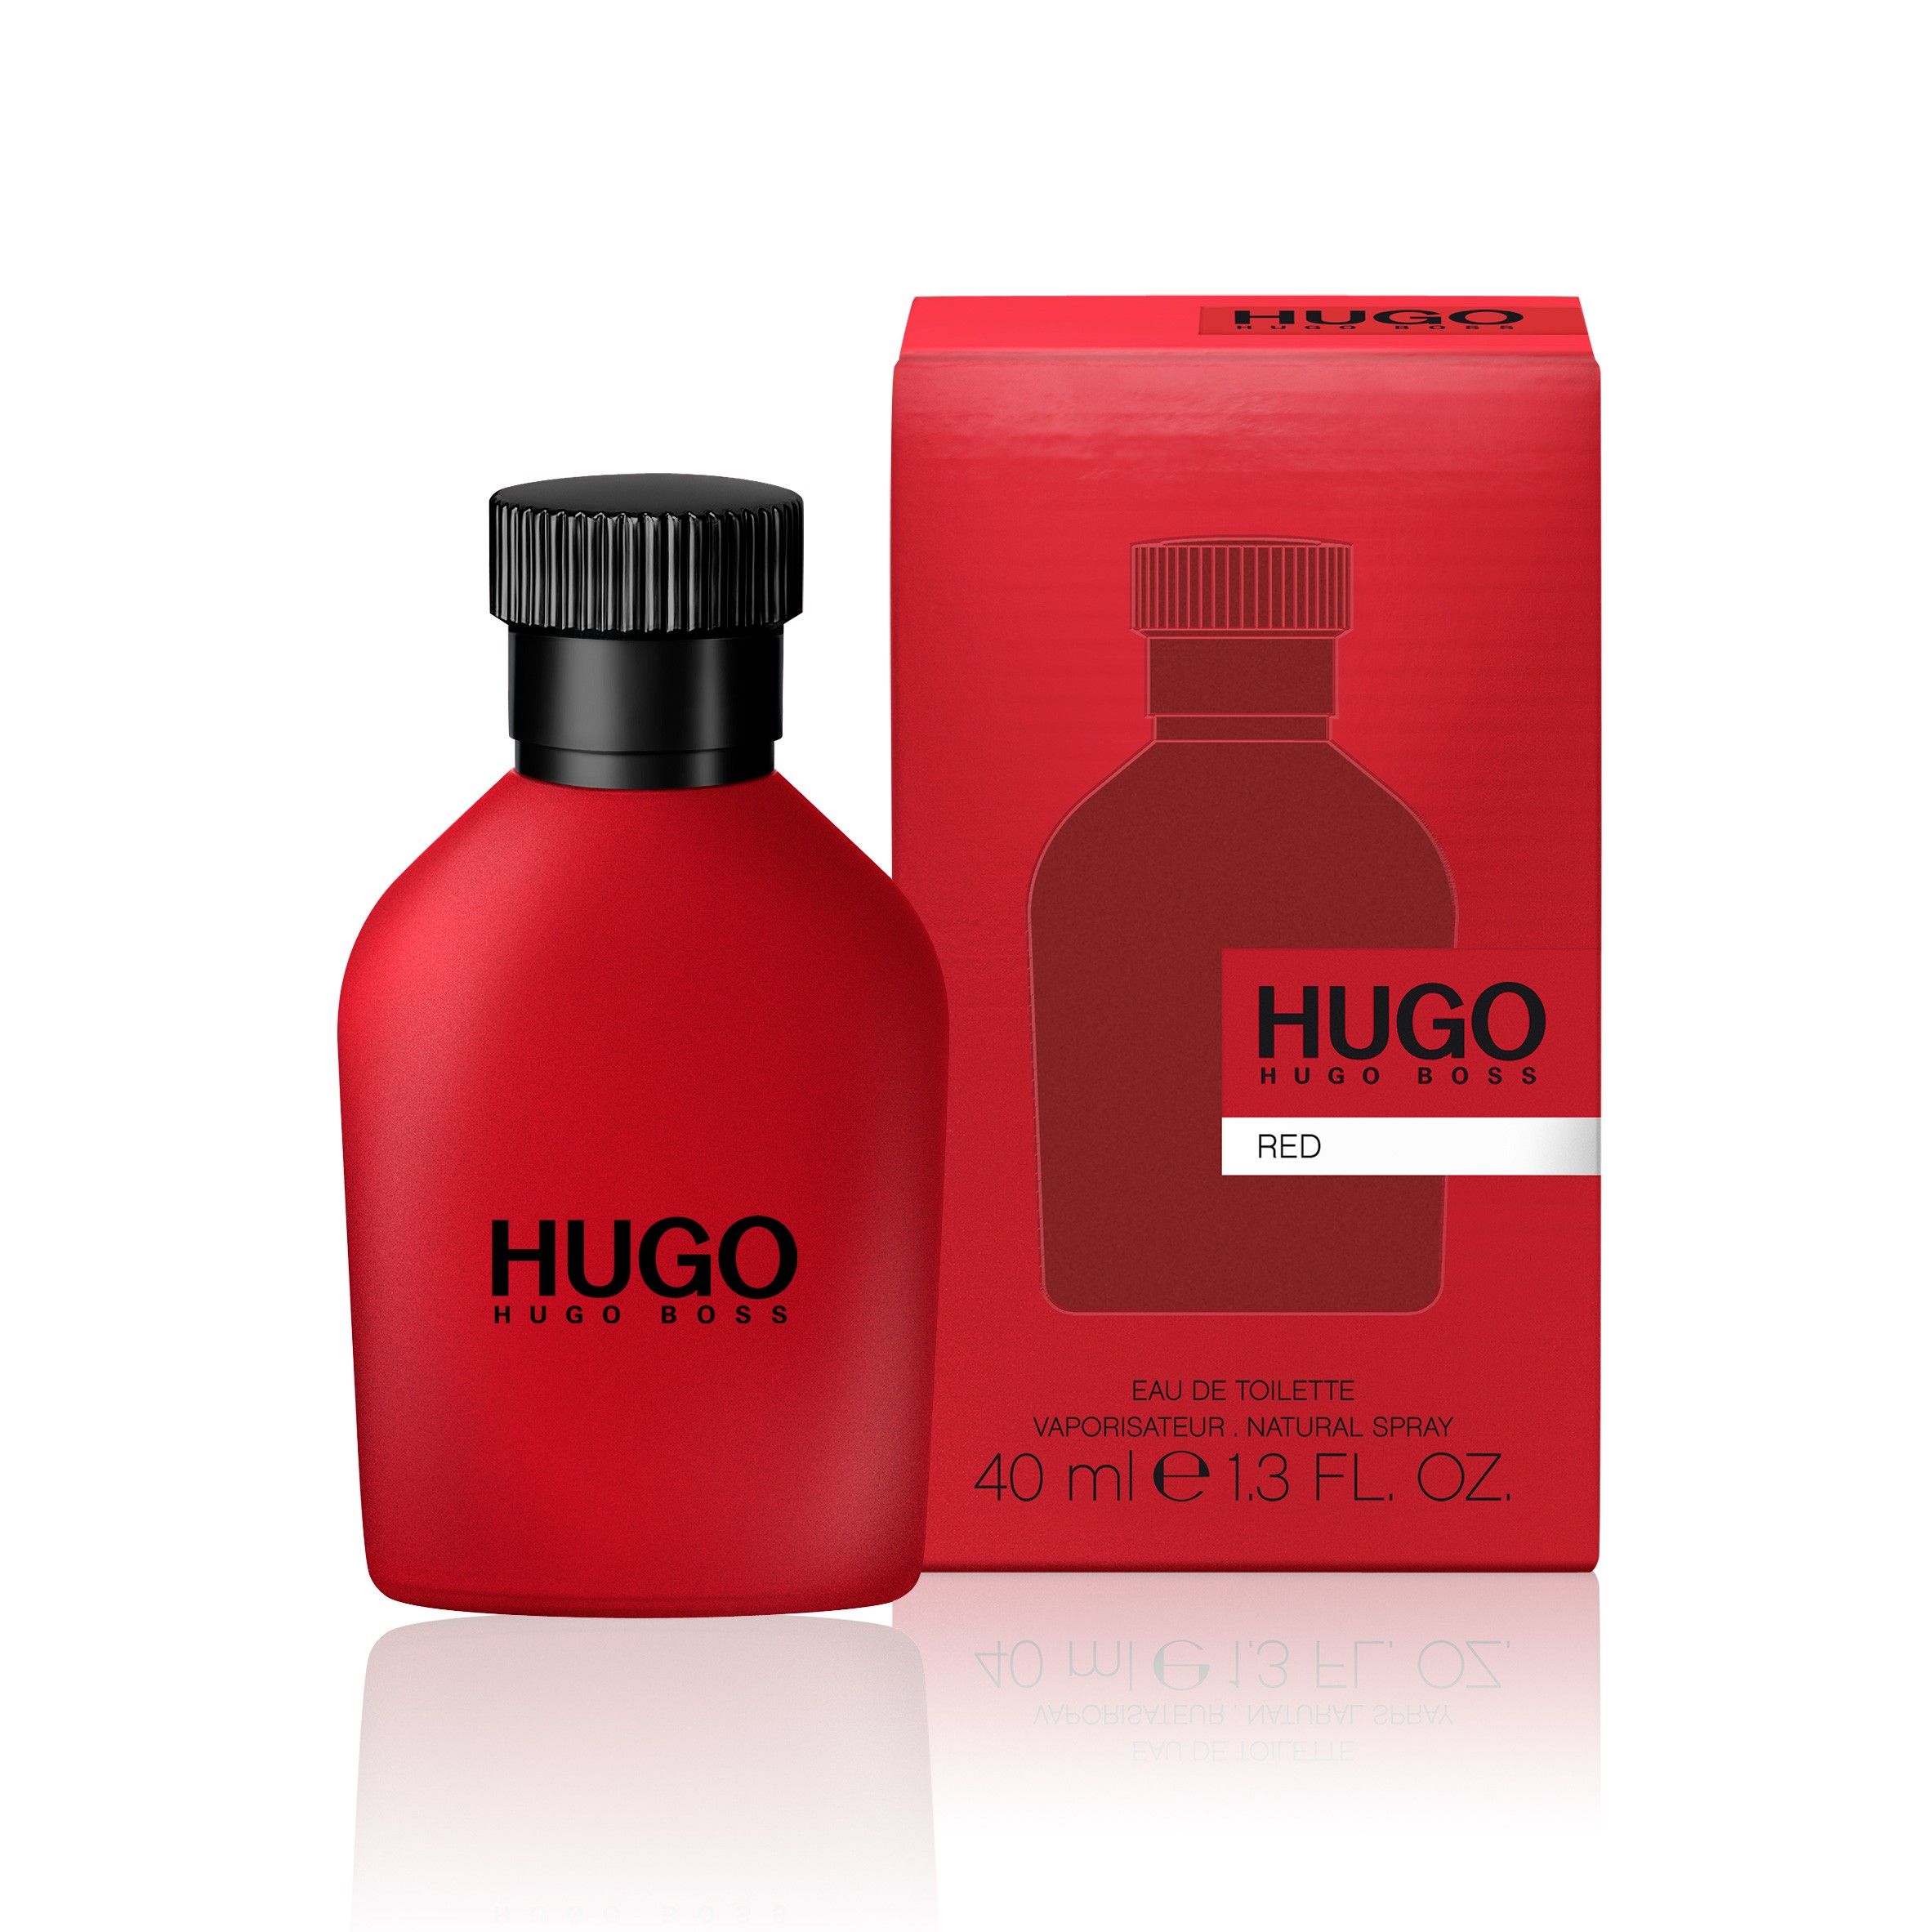 Hugo me. Hugo Boss "Hugo Red" EDT, 100ml. Hugo Boss Red, EDT., 150 ml. Hugo Boss Red EDT Хьюго босс ред туалетная вода 150 ml. Hugo Boss мужской Hugo туалетная вода (EDT) 40мл.